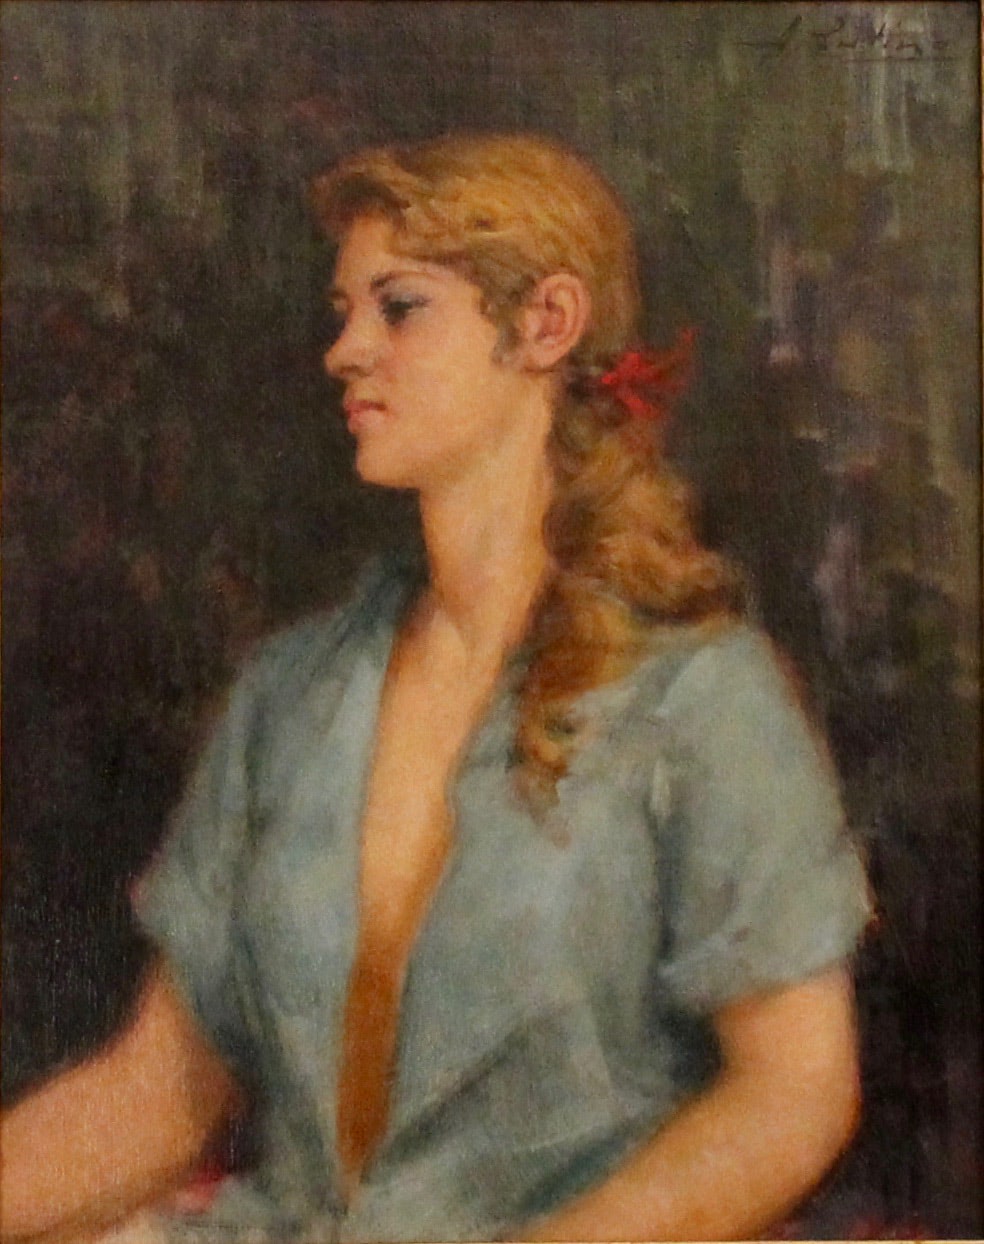 Antonio Cutino (1905/1984) "Figura di giovane ragazza" - "Figure of a young girl"